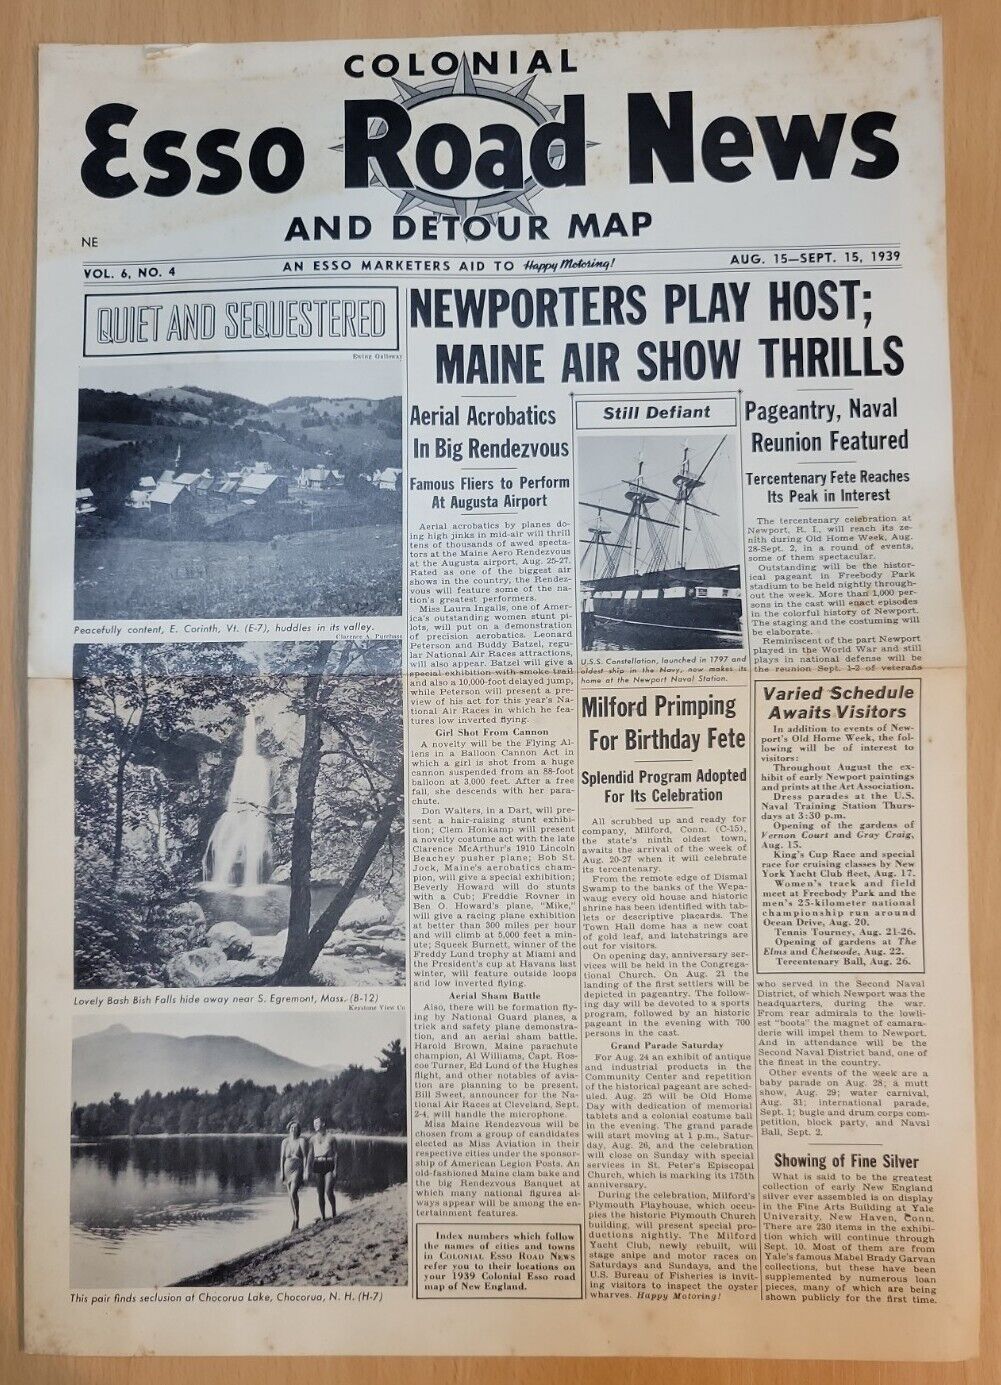 1939 COLONIAL ESSO ROAD NEWS & DETOUR MAP Vol. 6, No. 4 AUG.15-SEPT.15, 1939